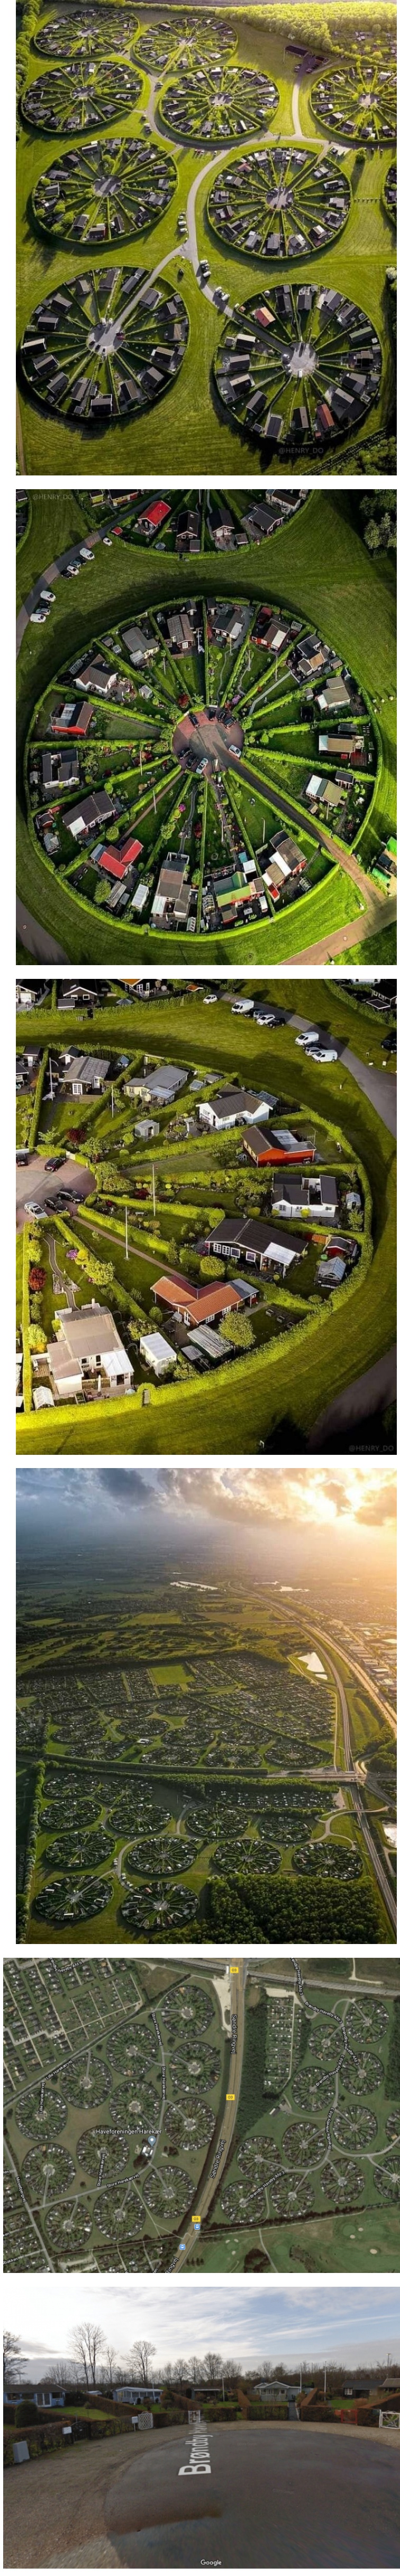 덴마크의 어느 시골 마을 구조 .jpg